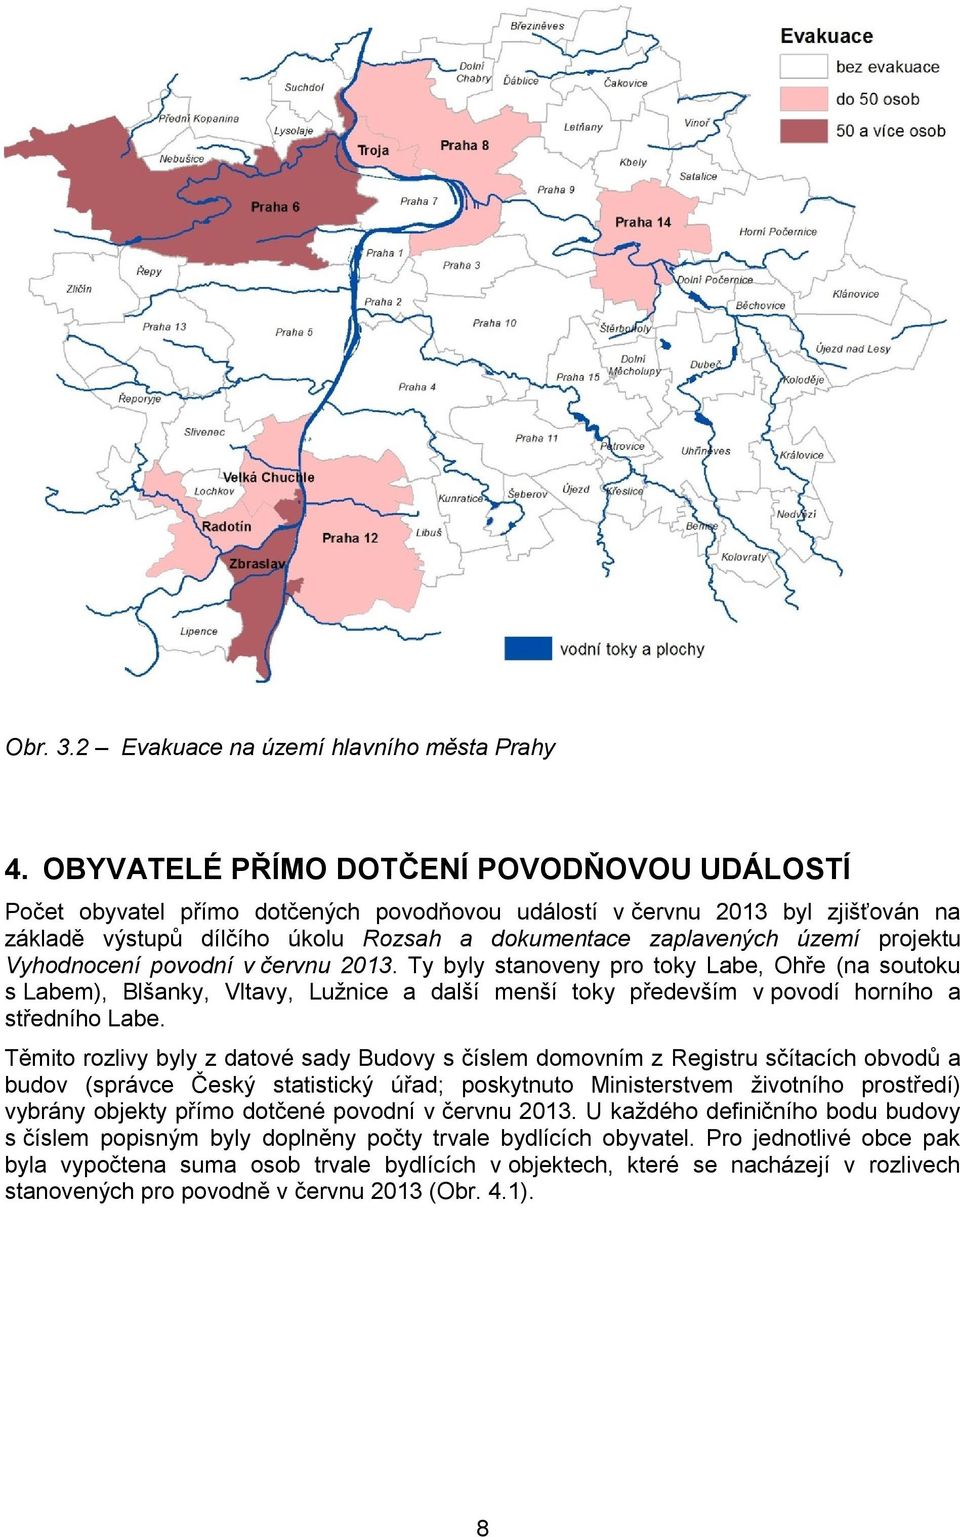 projektu Vyhodnocení povodní v červnu 2013. Ty byly stanoveny pro toky Labe, Ohře (na soutoku s Labem), Blšanky, Vltavy, Lužnice a další menší toky především v povodí horního a středního Labe.